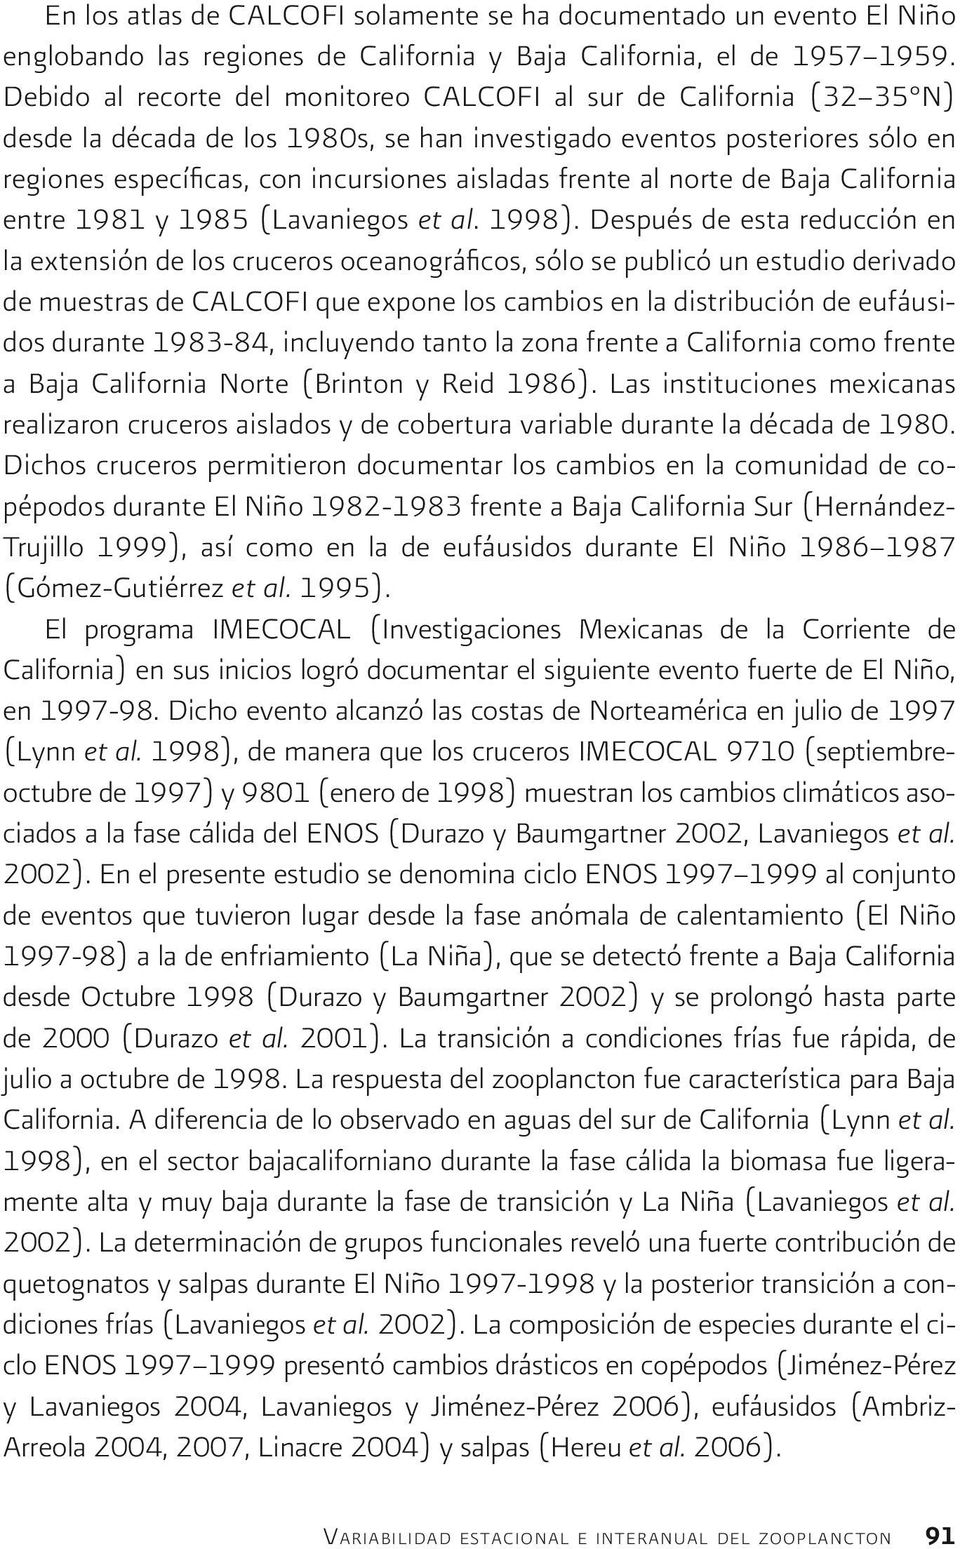 frente al norte de Baja California entre 1981 y 1985 (Lavaniegos et al. 1998).